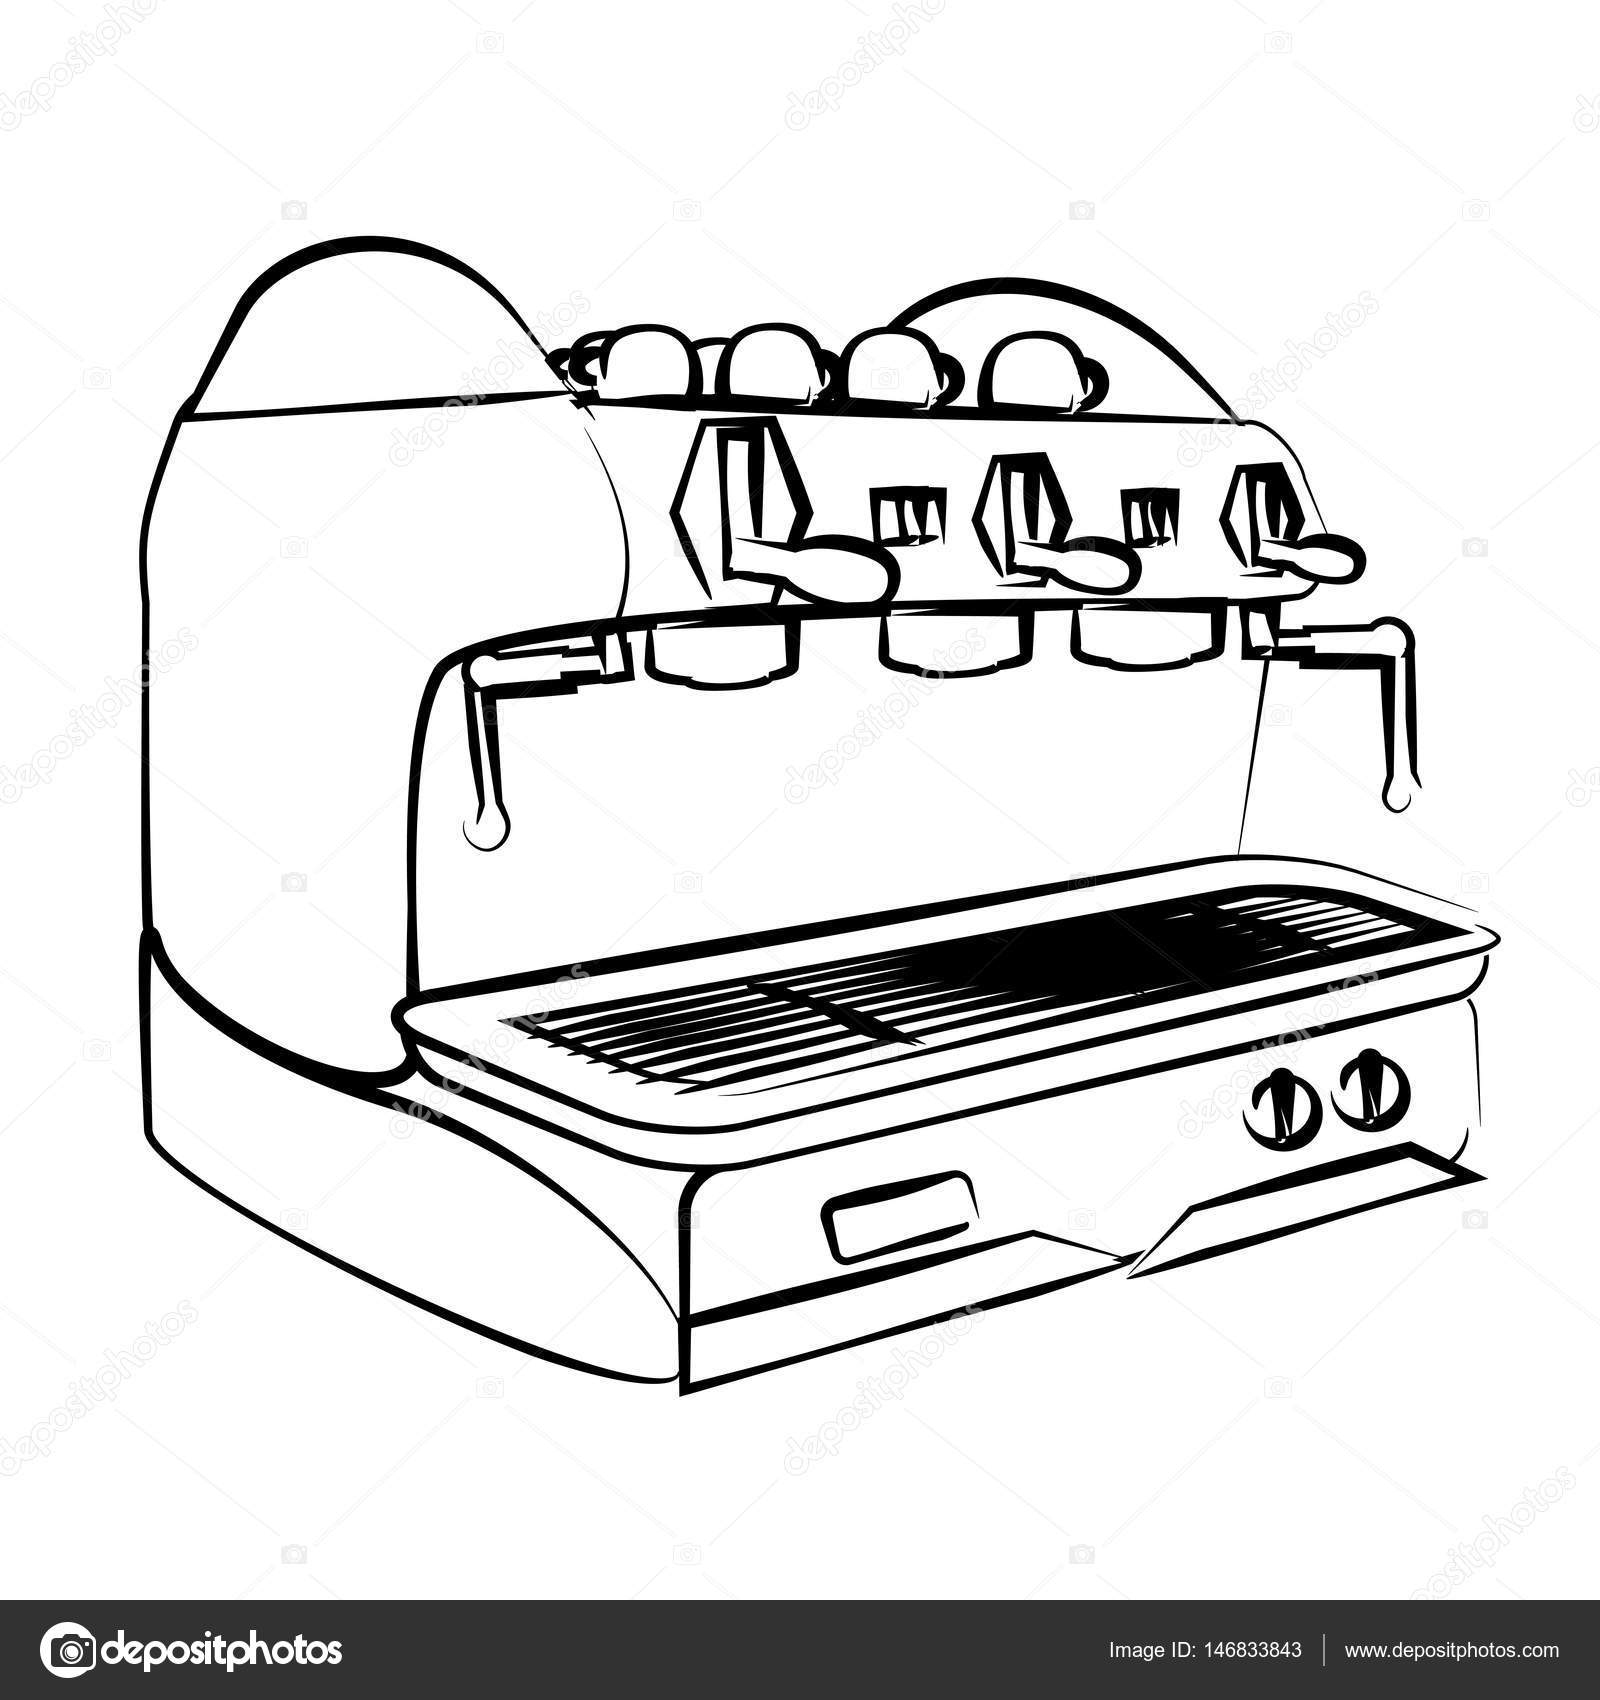 Download Espresso Coffee Machine Vector - Mr. Coffee Espresso